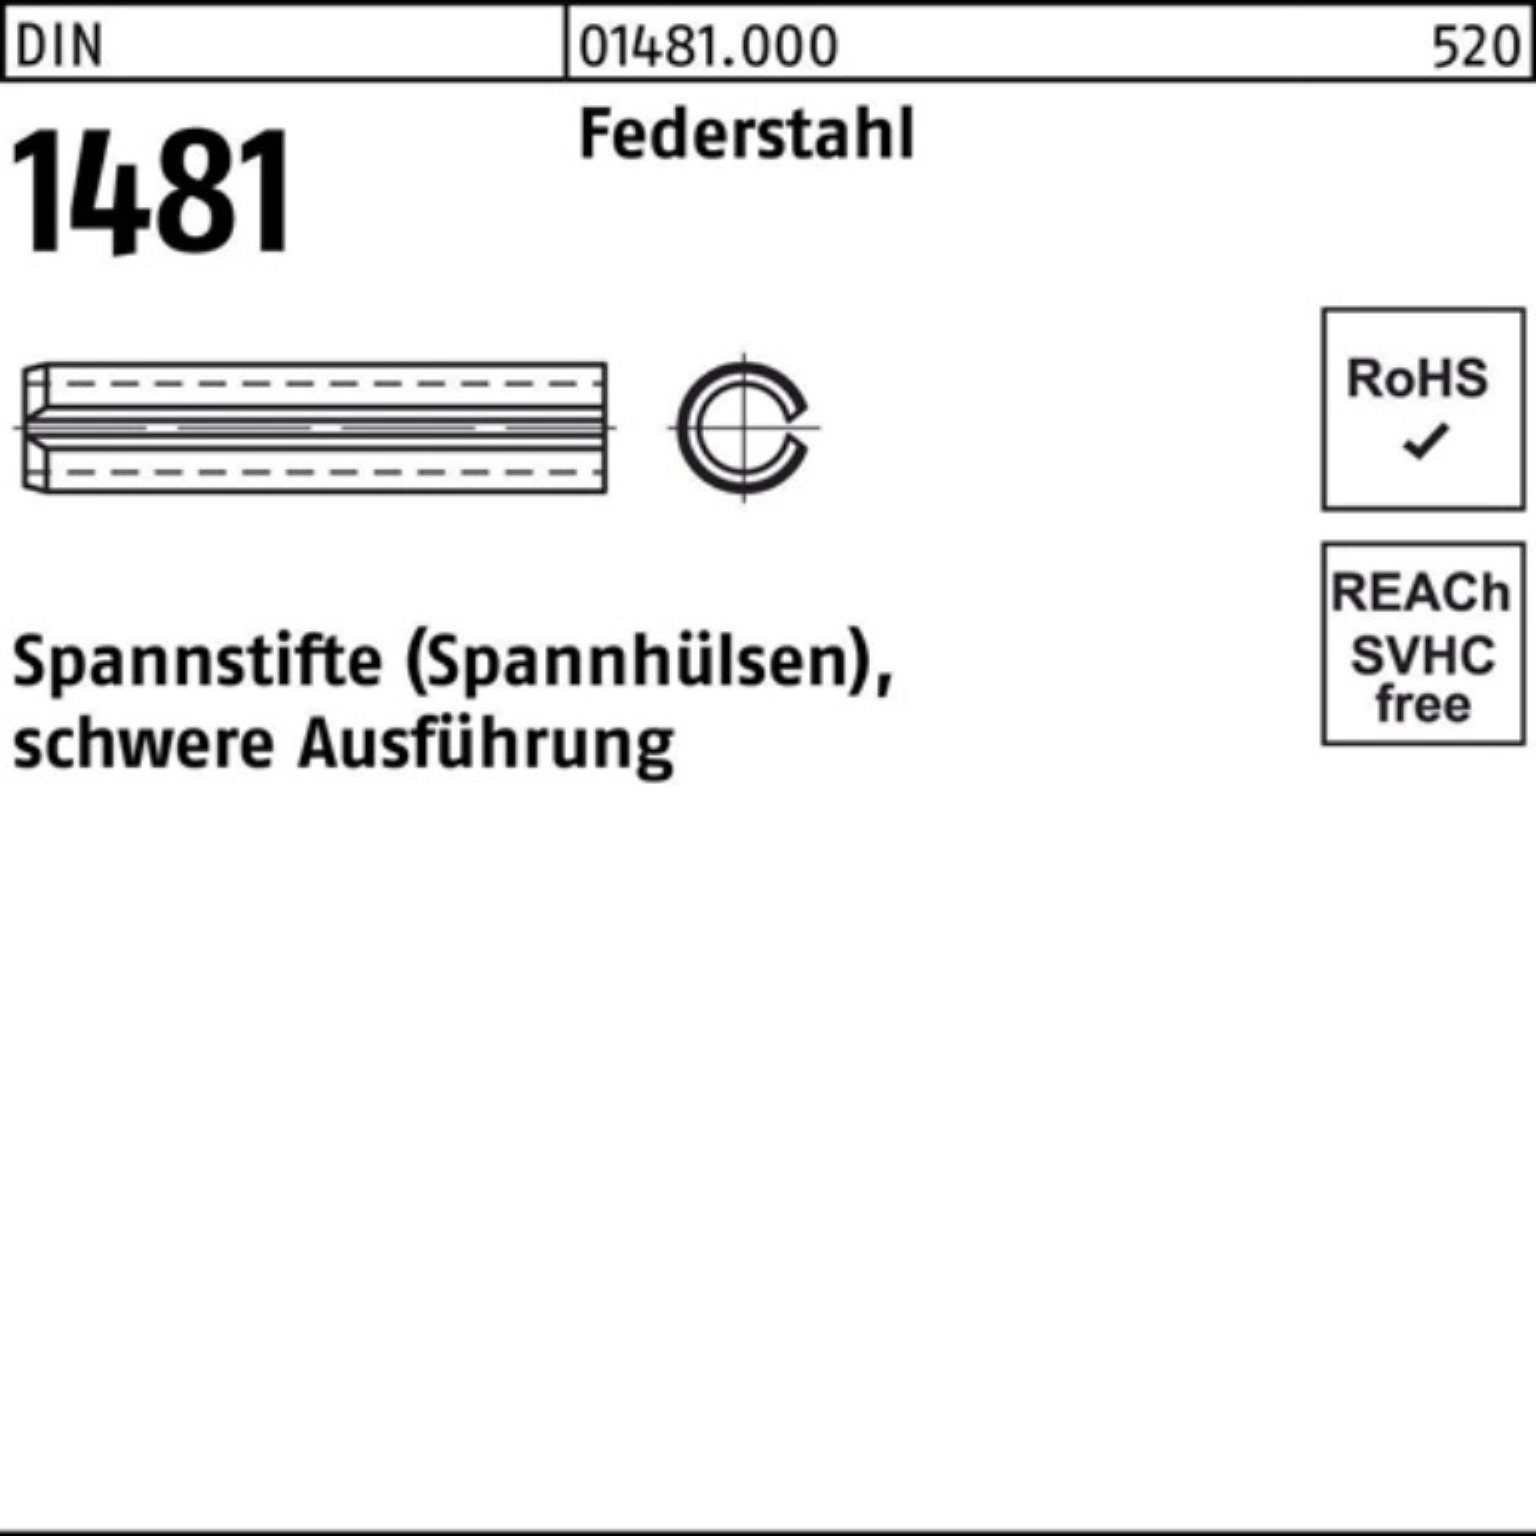 5x DIN 10 10 1481 Federstahl Spannstift Ausführung Reyher 100er Pack Spannstift schwere